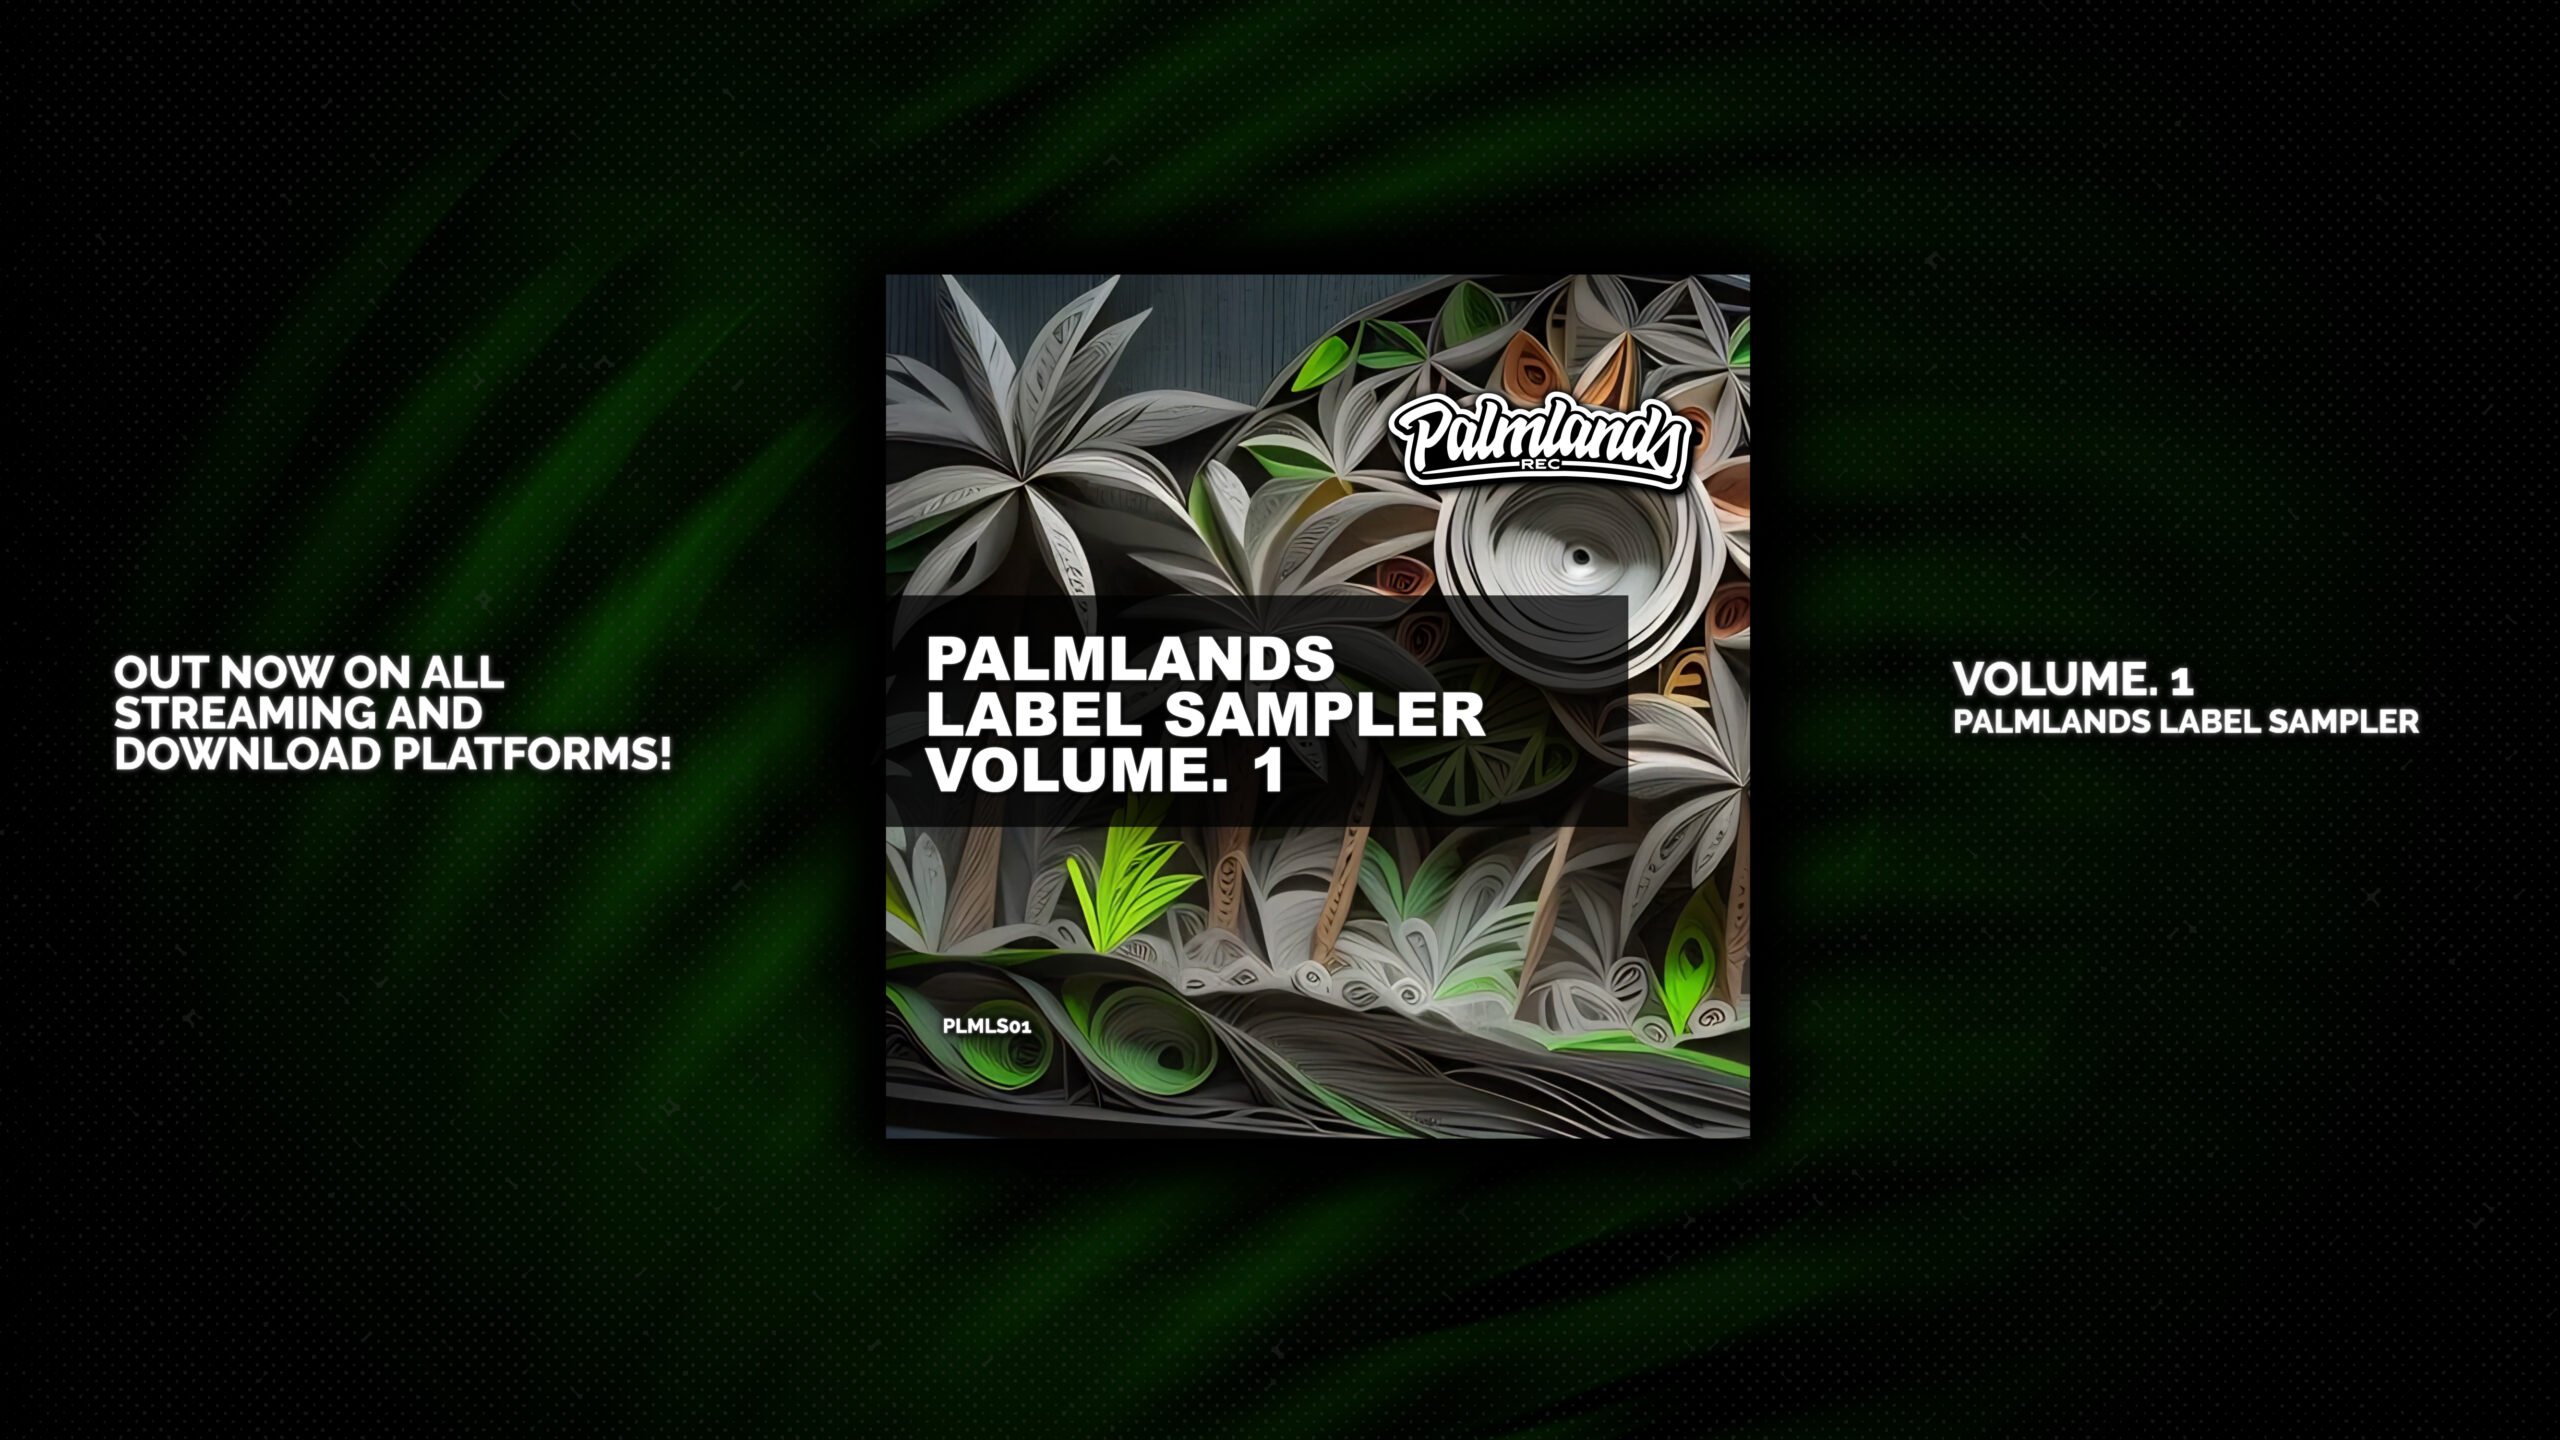 Palmlands Label Sampler Volume 1